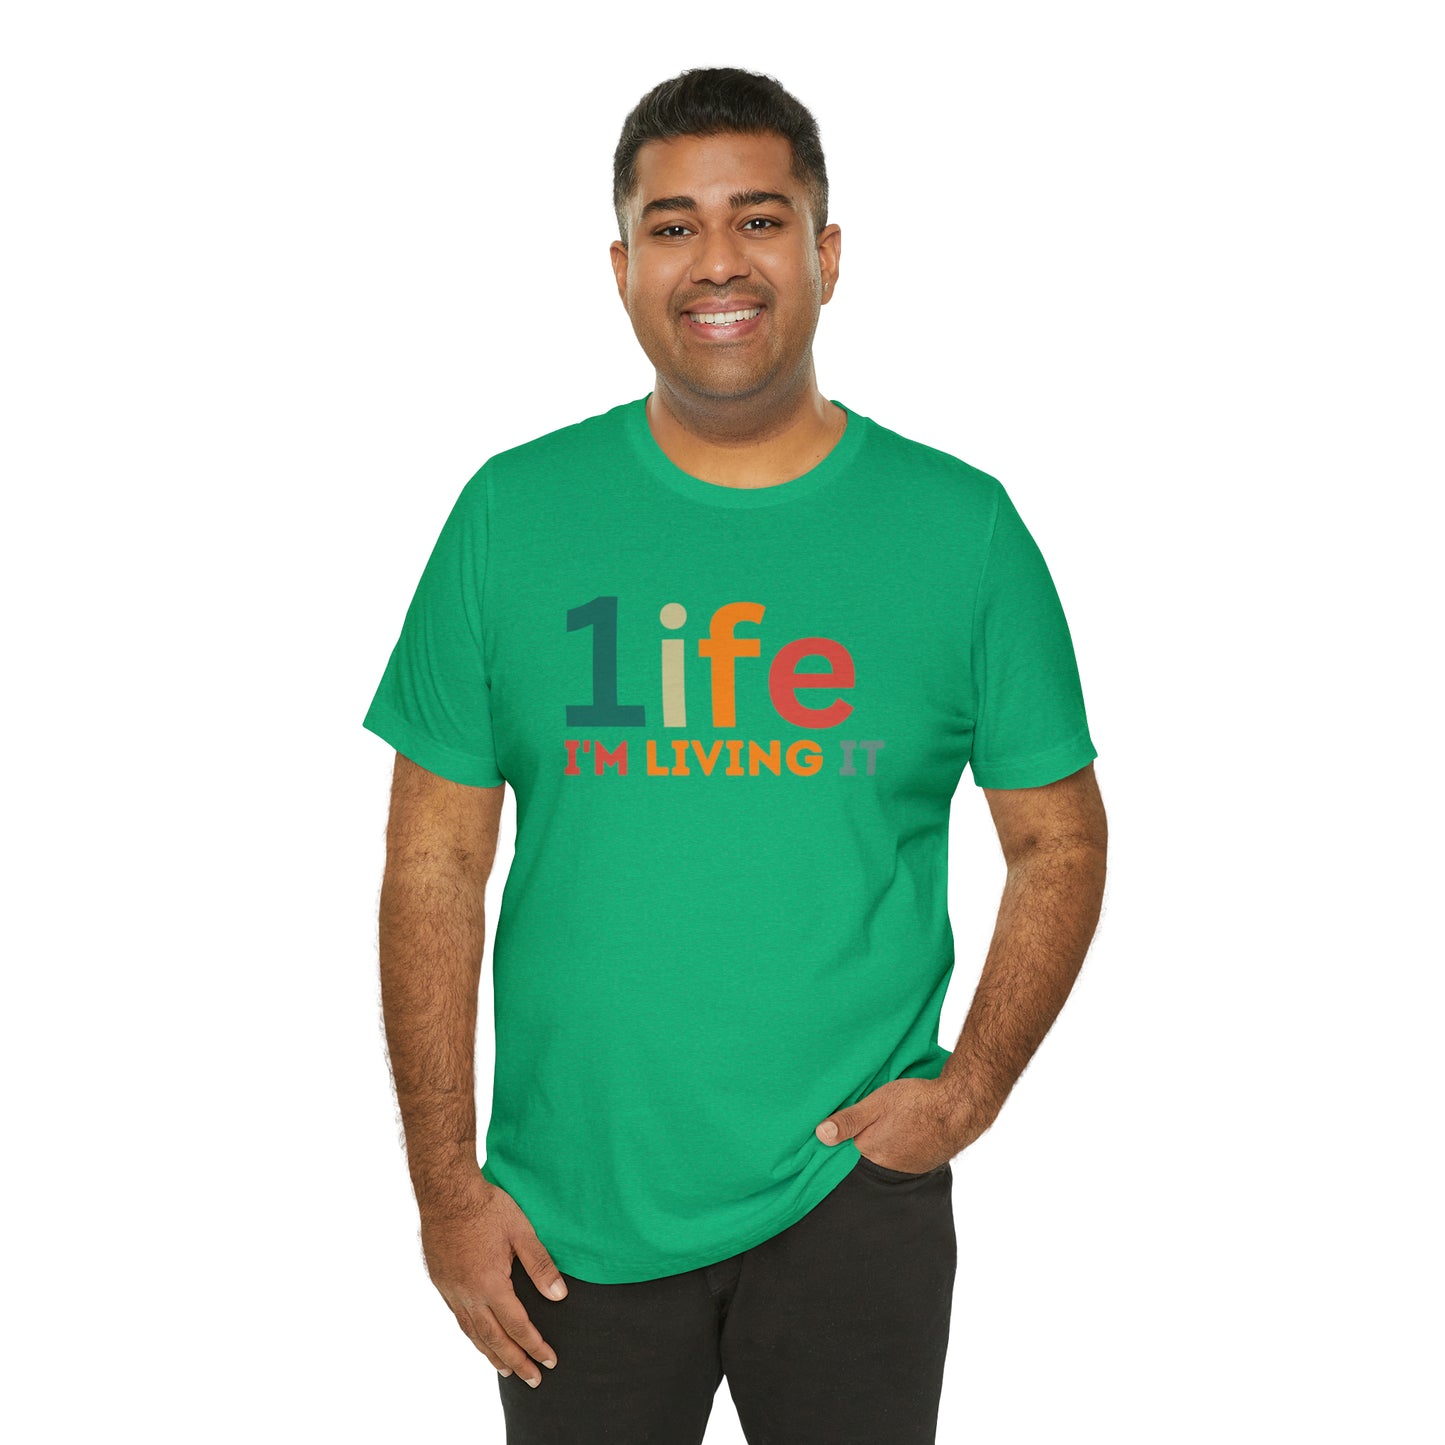 One life Shirt Retro 1life shirt Live Your Life You Only Have One Life To Live Retro Shirt